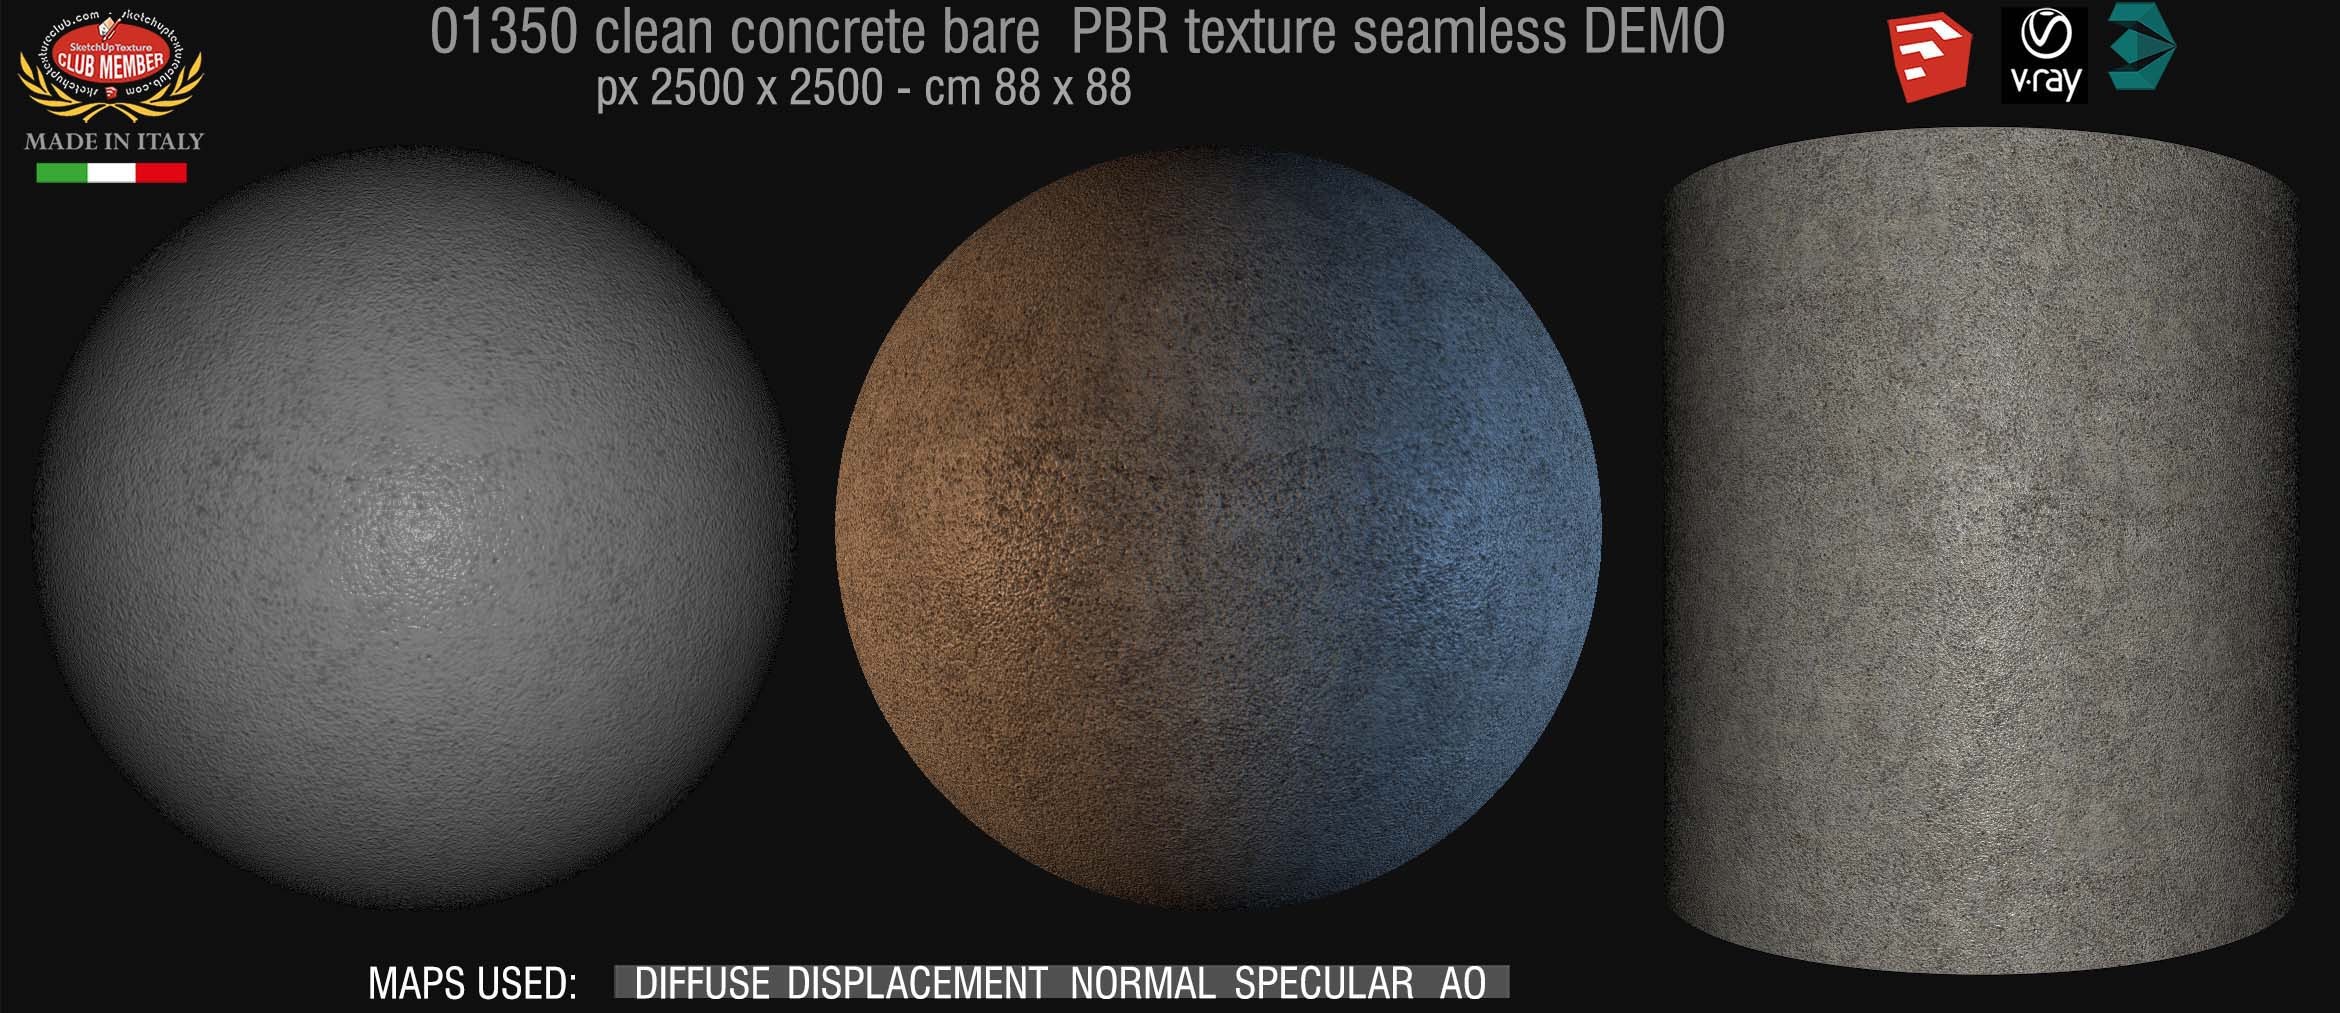 01350 Concrete bare clean PBR texture seamless DEMO